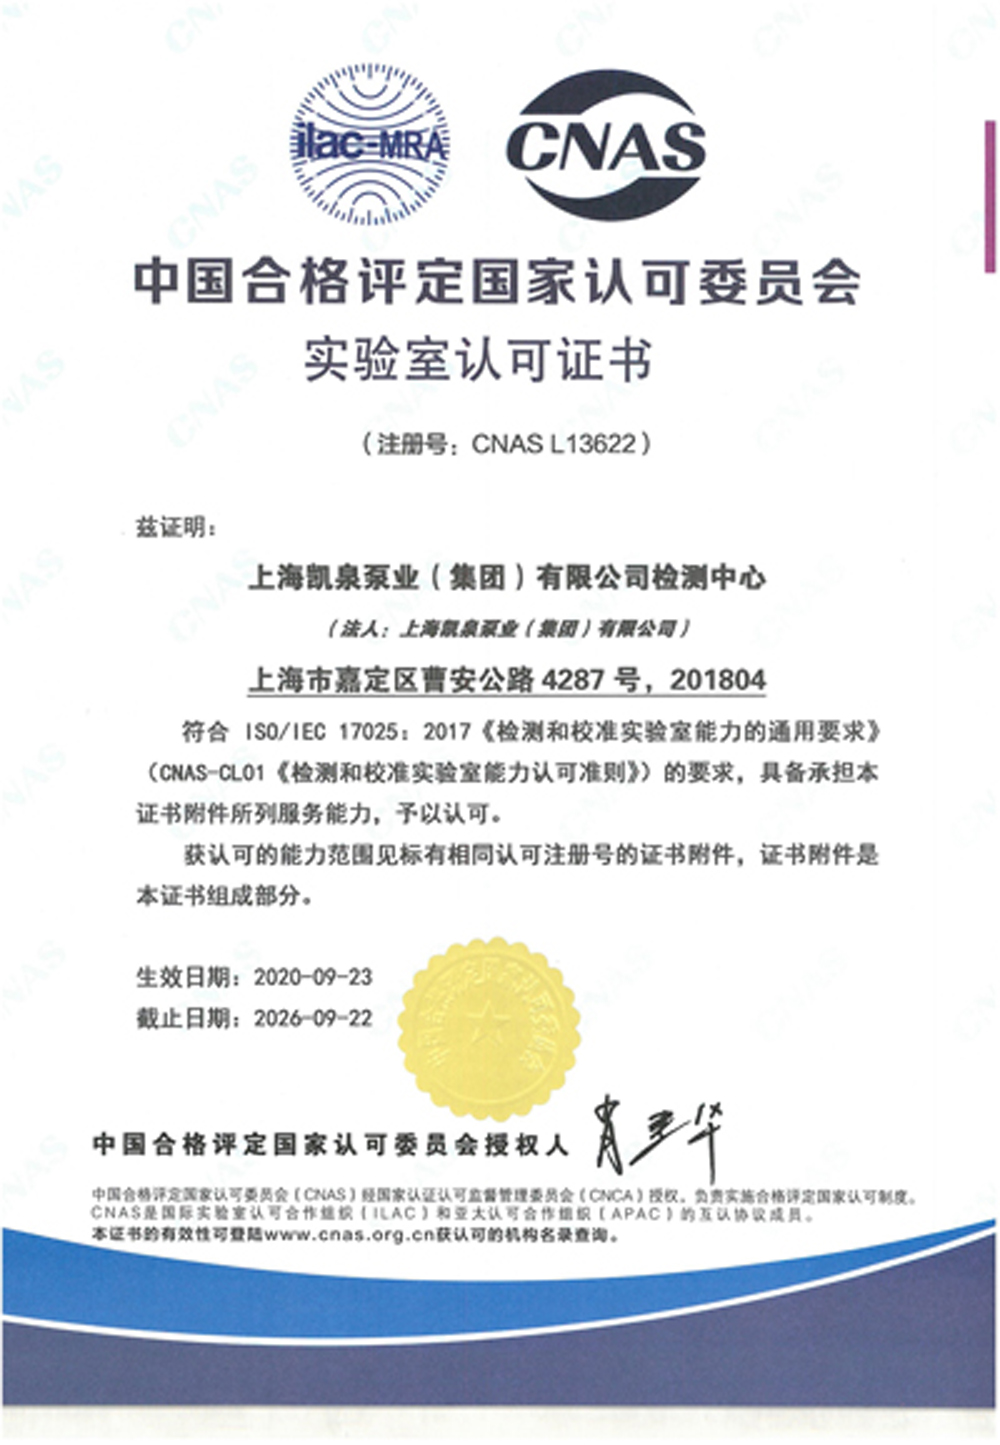 上海凱泉-CNAS證書中文版-有效期至20260922